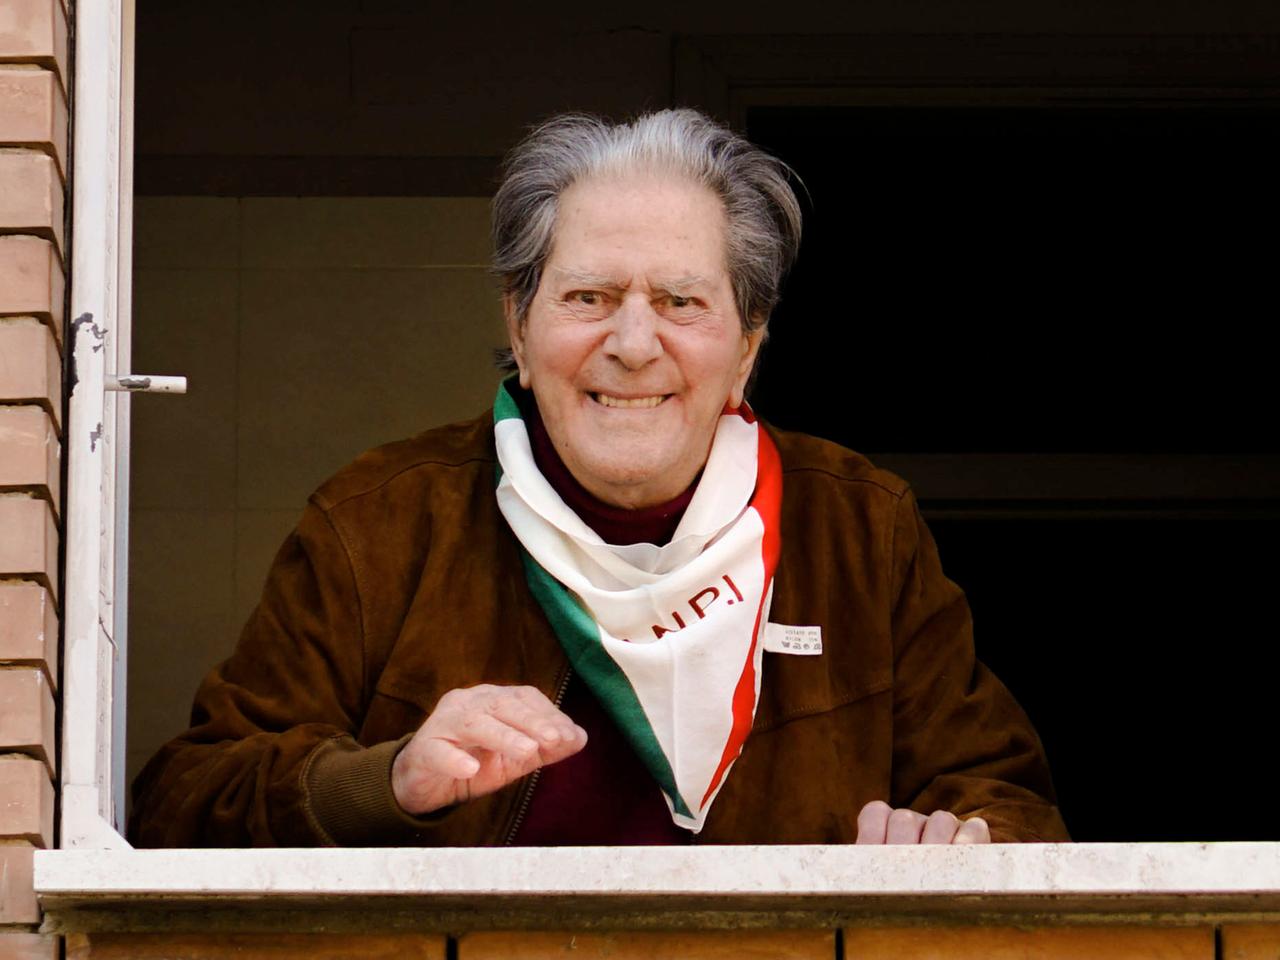 Der alte Mann lächelt am Fenster, er hat ein grün-weiß-rotes Halstuch mit dem Logo der Partisanen-Organisation ANPI umgebunden.